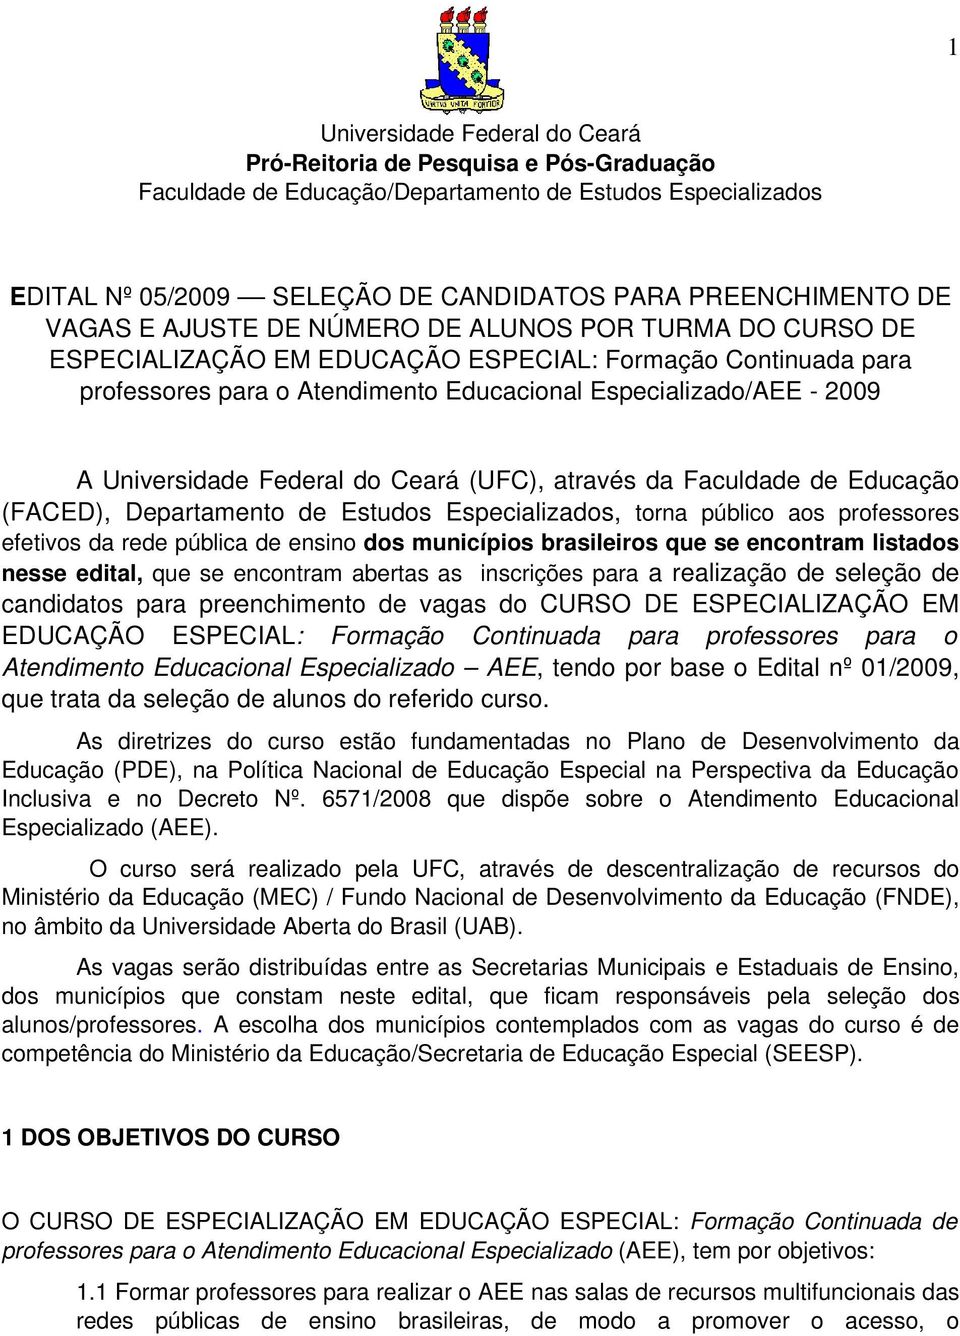 Federal do Ceará (UFC), através da Faculdade de Educação (FACED), Departamento de Estudos Especializados, torna público aos professores efetivos da rede pública de ensino dos municípios brasileiros